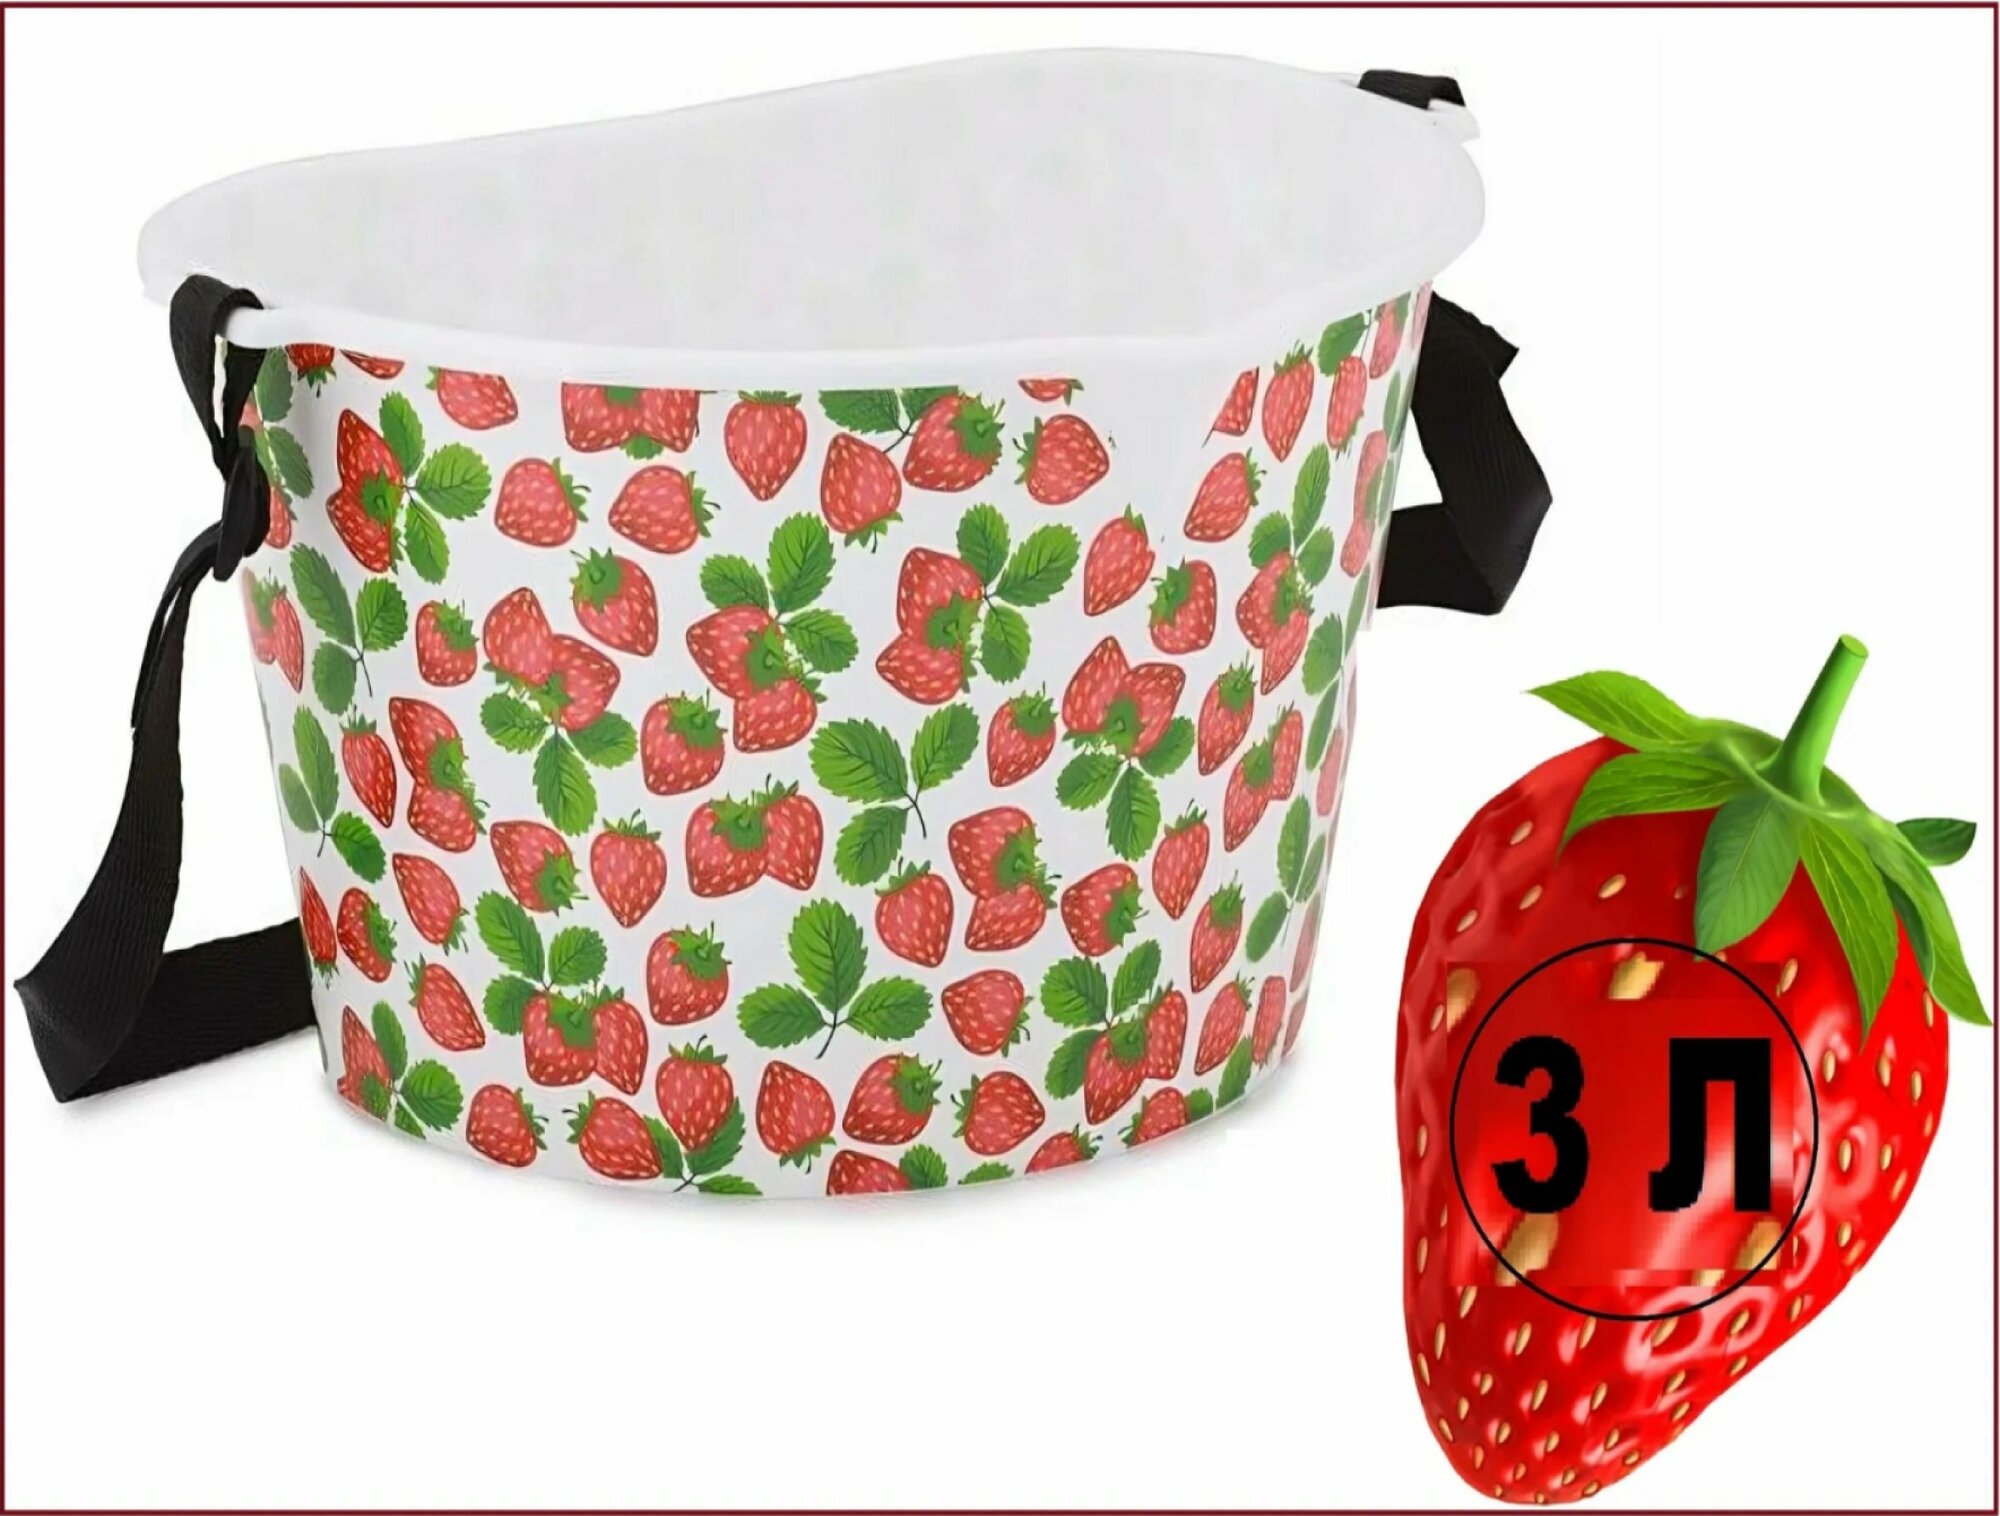 Емкость/ведро/корзина для сбора ягод 3 литра, аппликация лесные ягоды